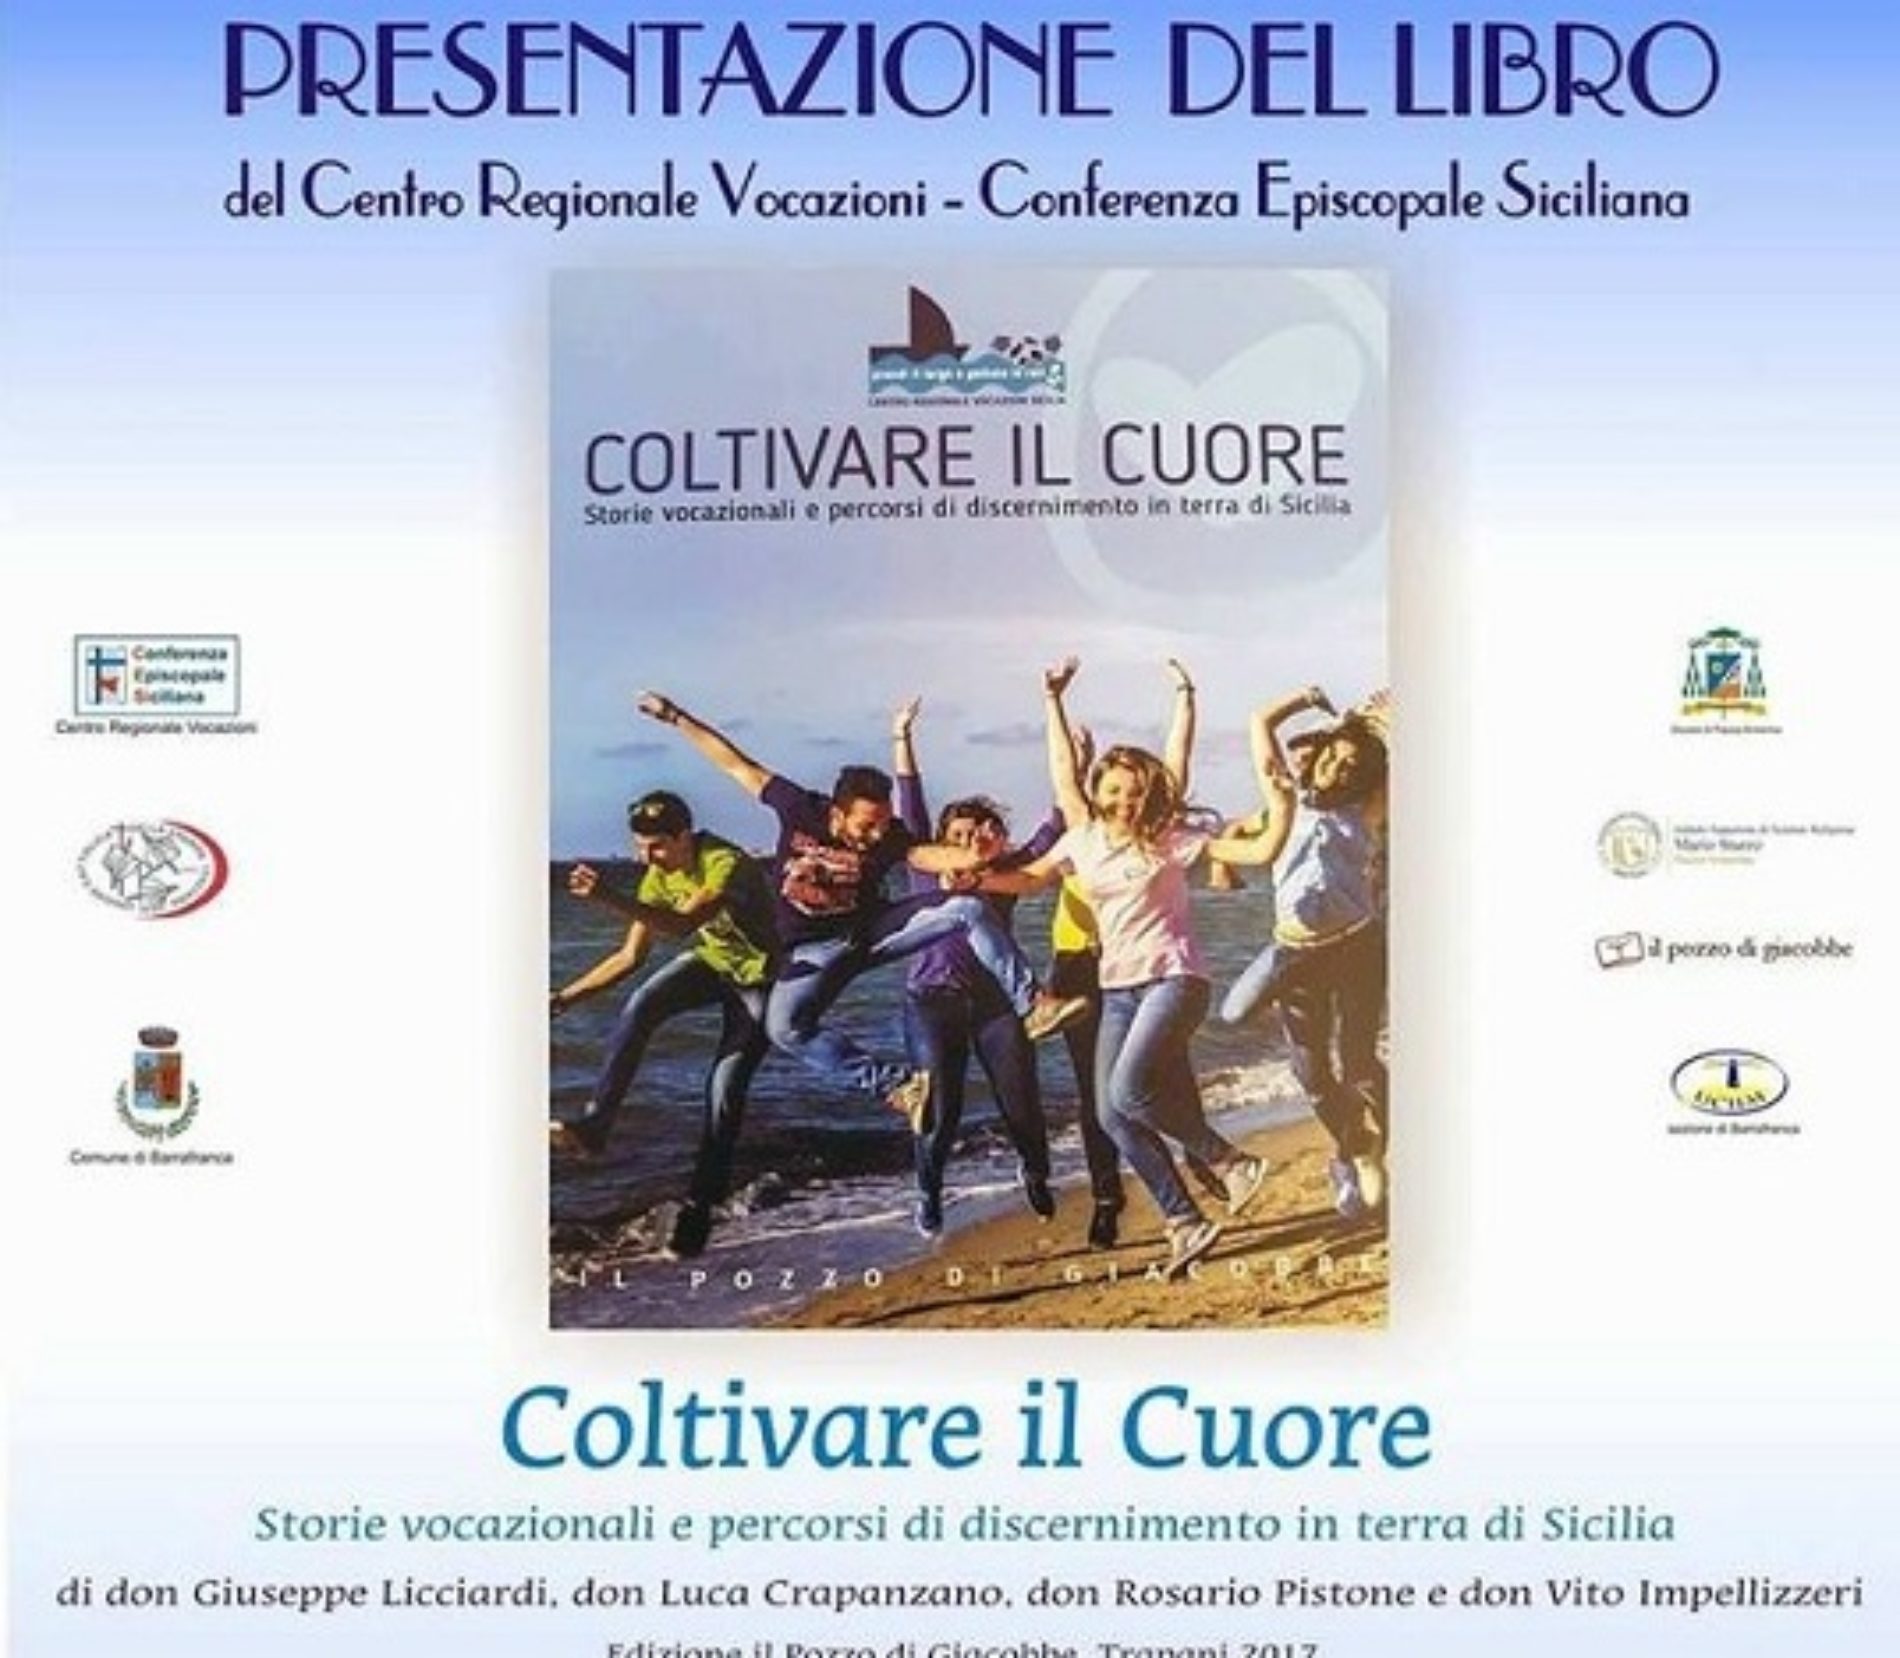 Presentazione del libro “Coltivare il cuore” Storie vocazionali e percorsi di discernimento in terra di Sicilia